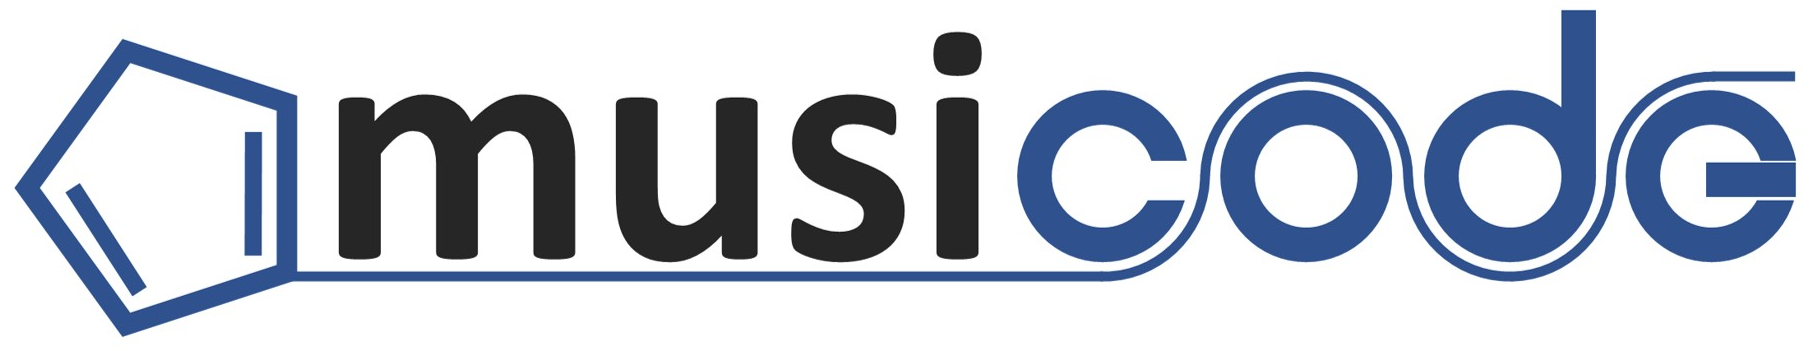 musicode-logo.jpg